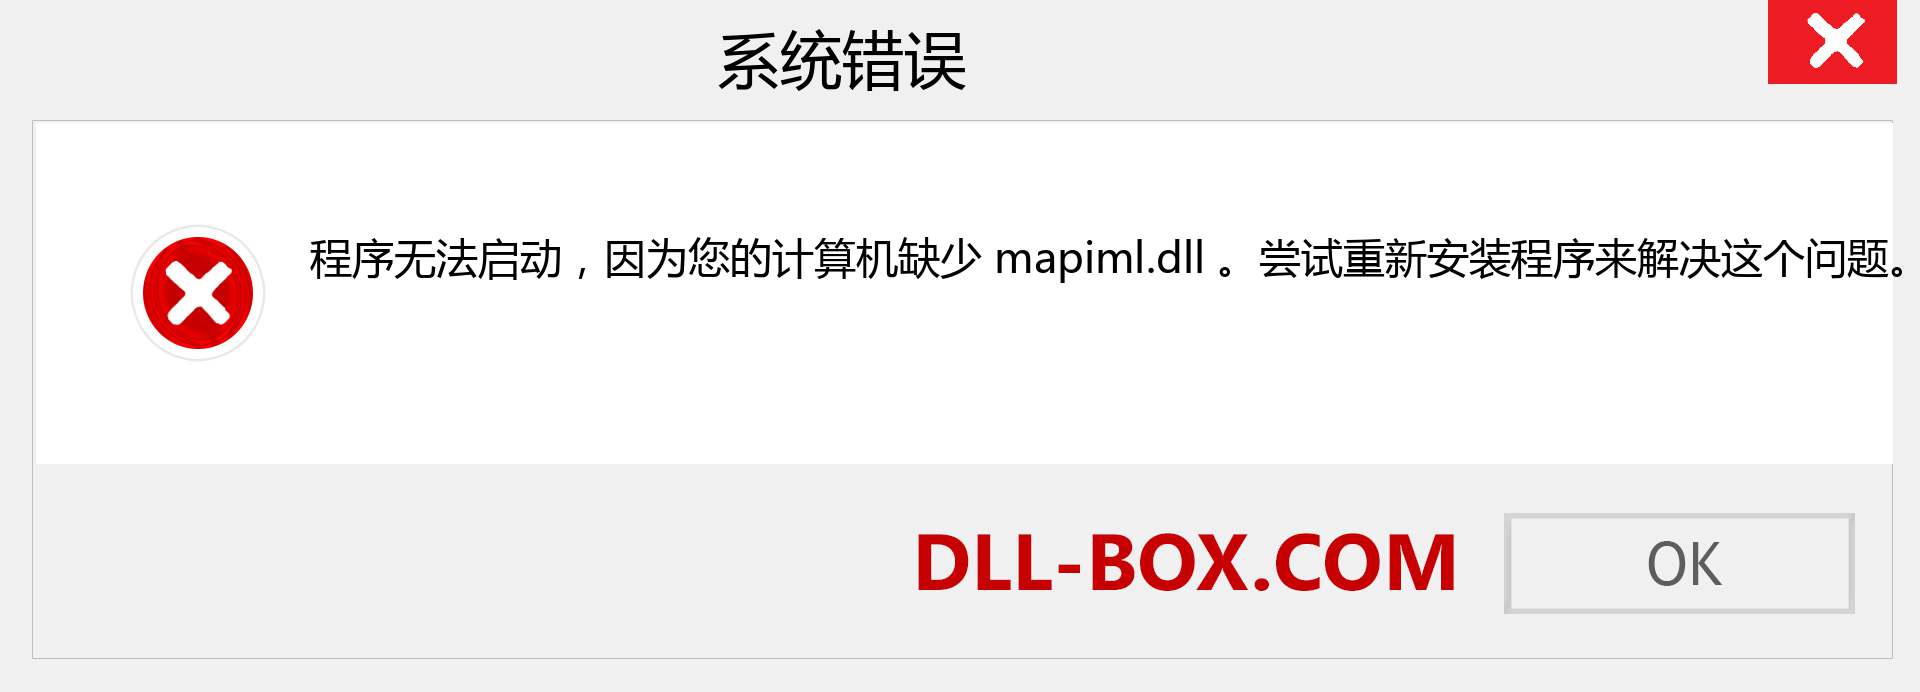 mapiml.dll 文件丢失？。 适用于 Windows 7、8、10 的下载 - 修复 Windows、照片、图像上的 mapiml dll 丢失错误